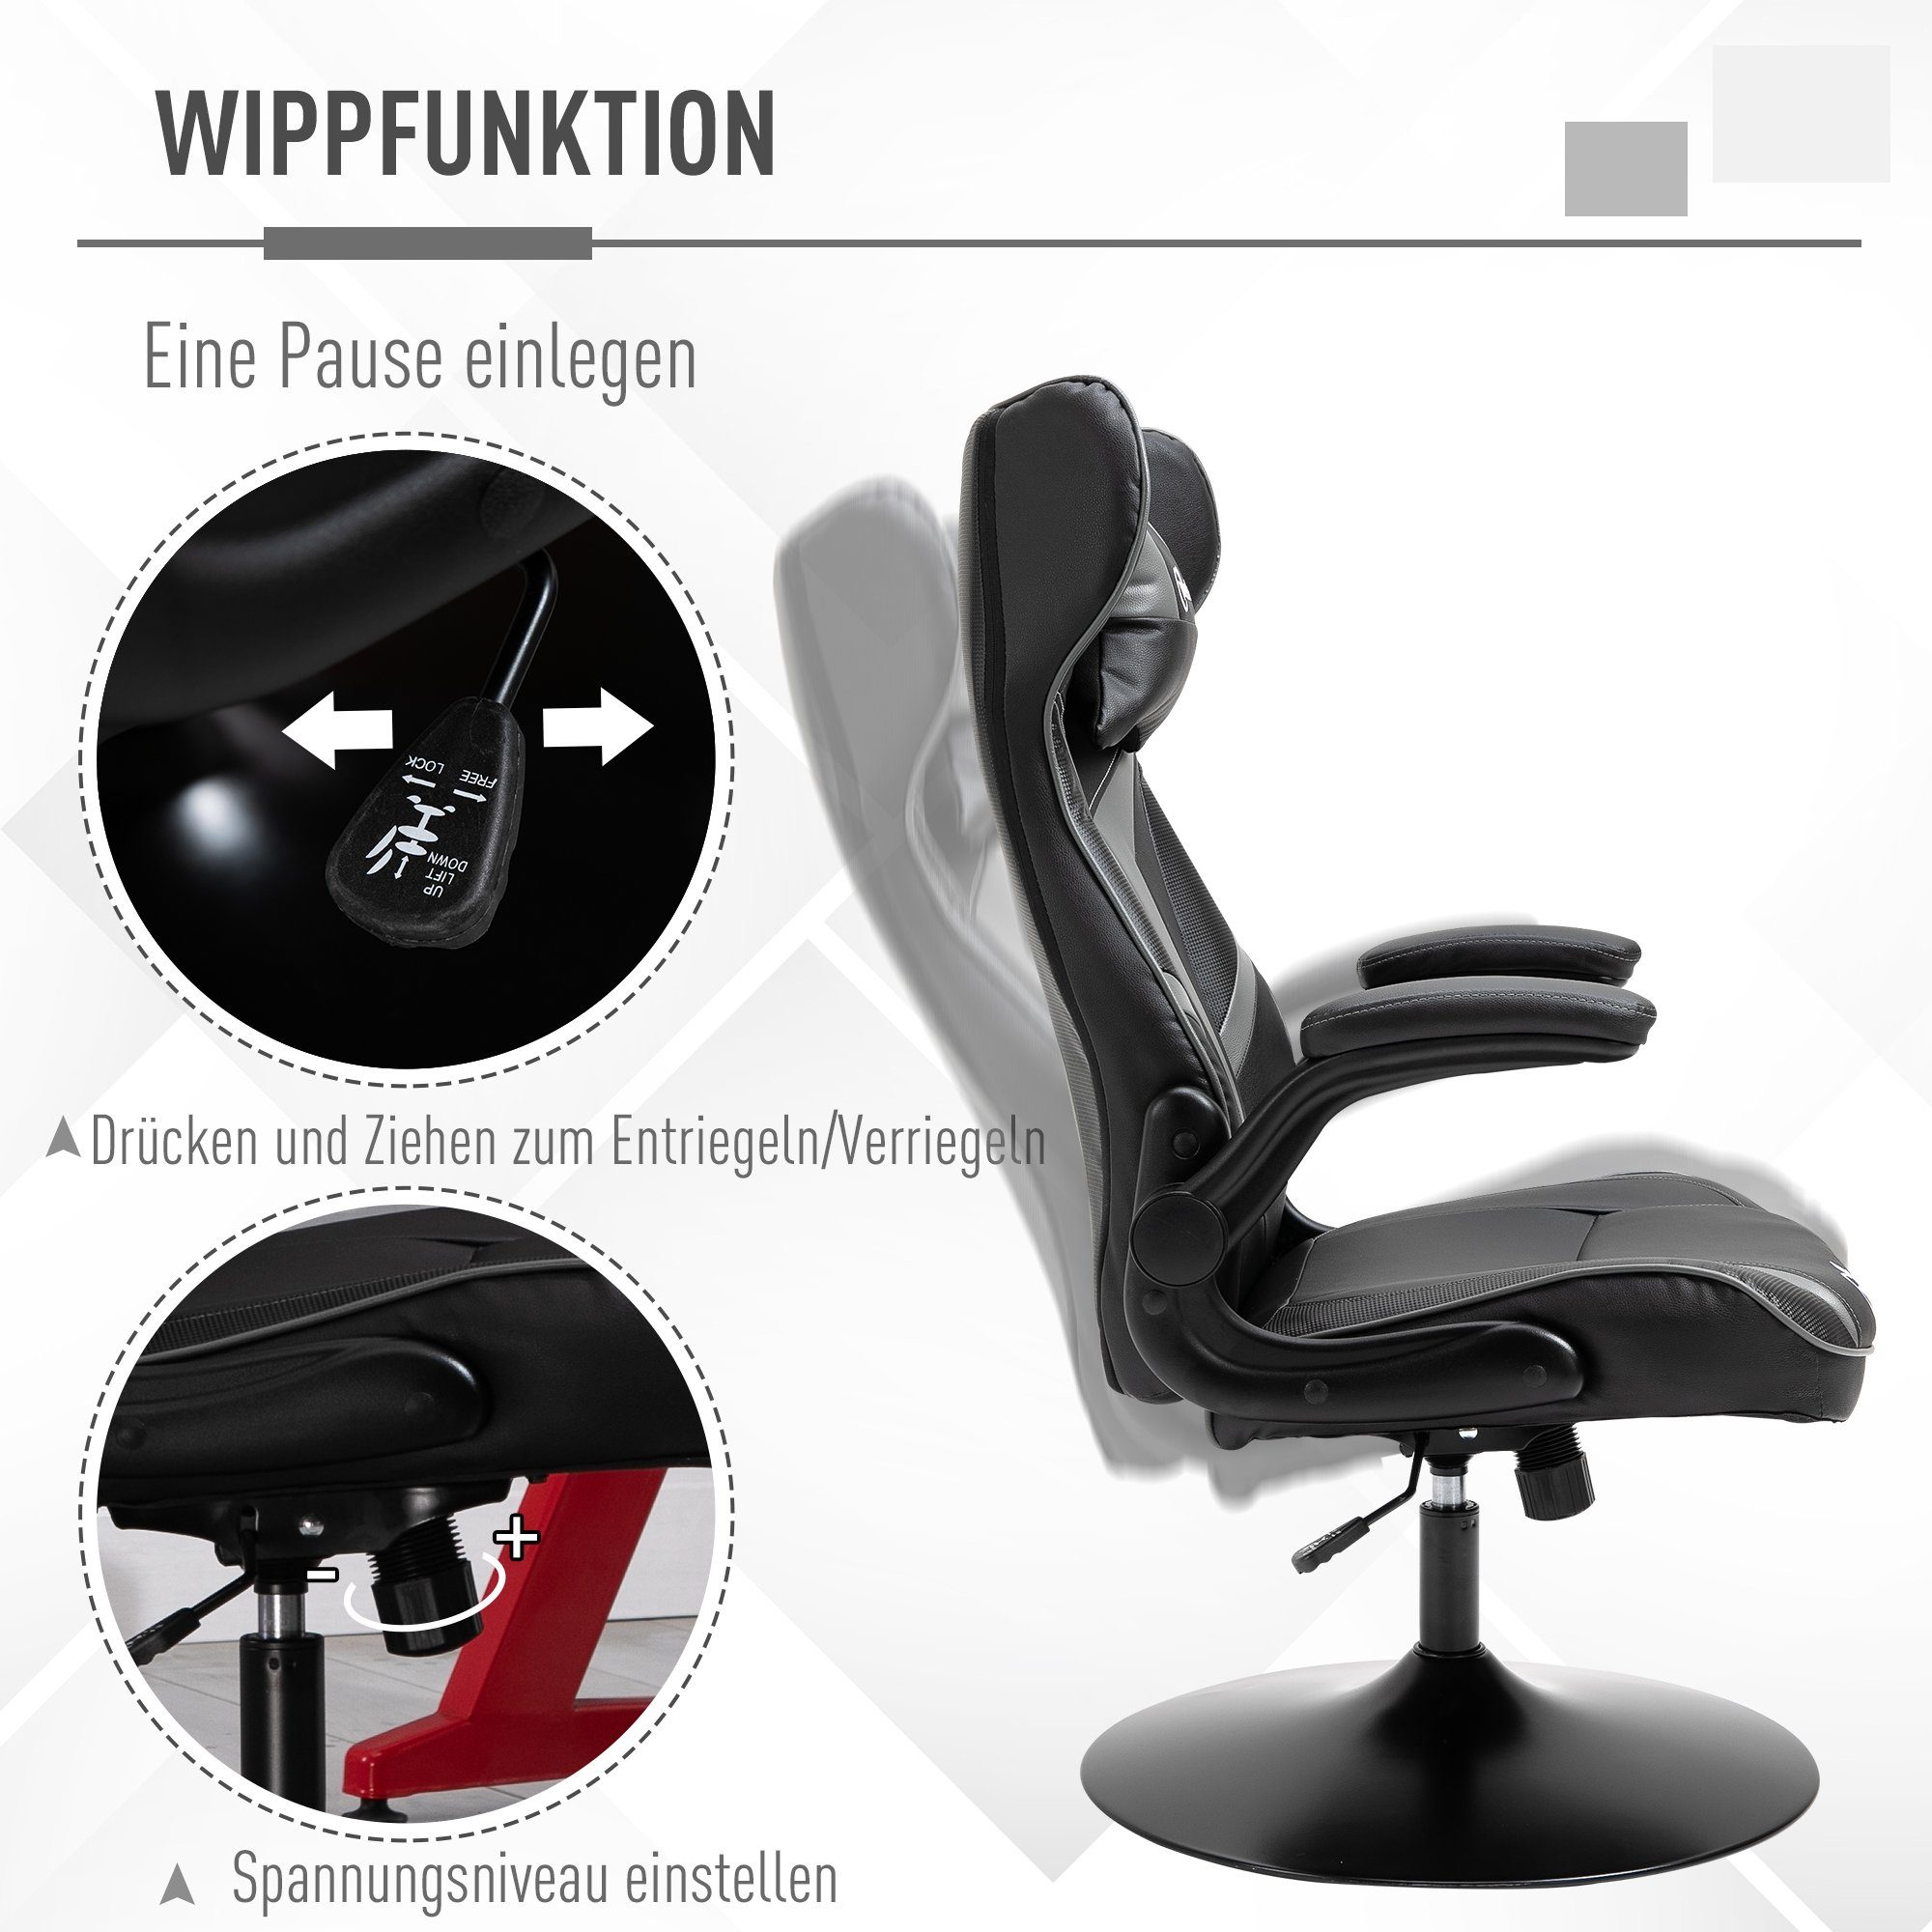 Vinsetto Stuhl Gaming schwarz/grau | schwarz/grau Schreibtischstuhl ergonomisch